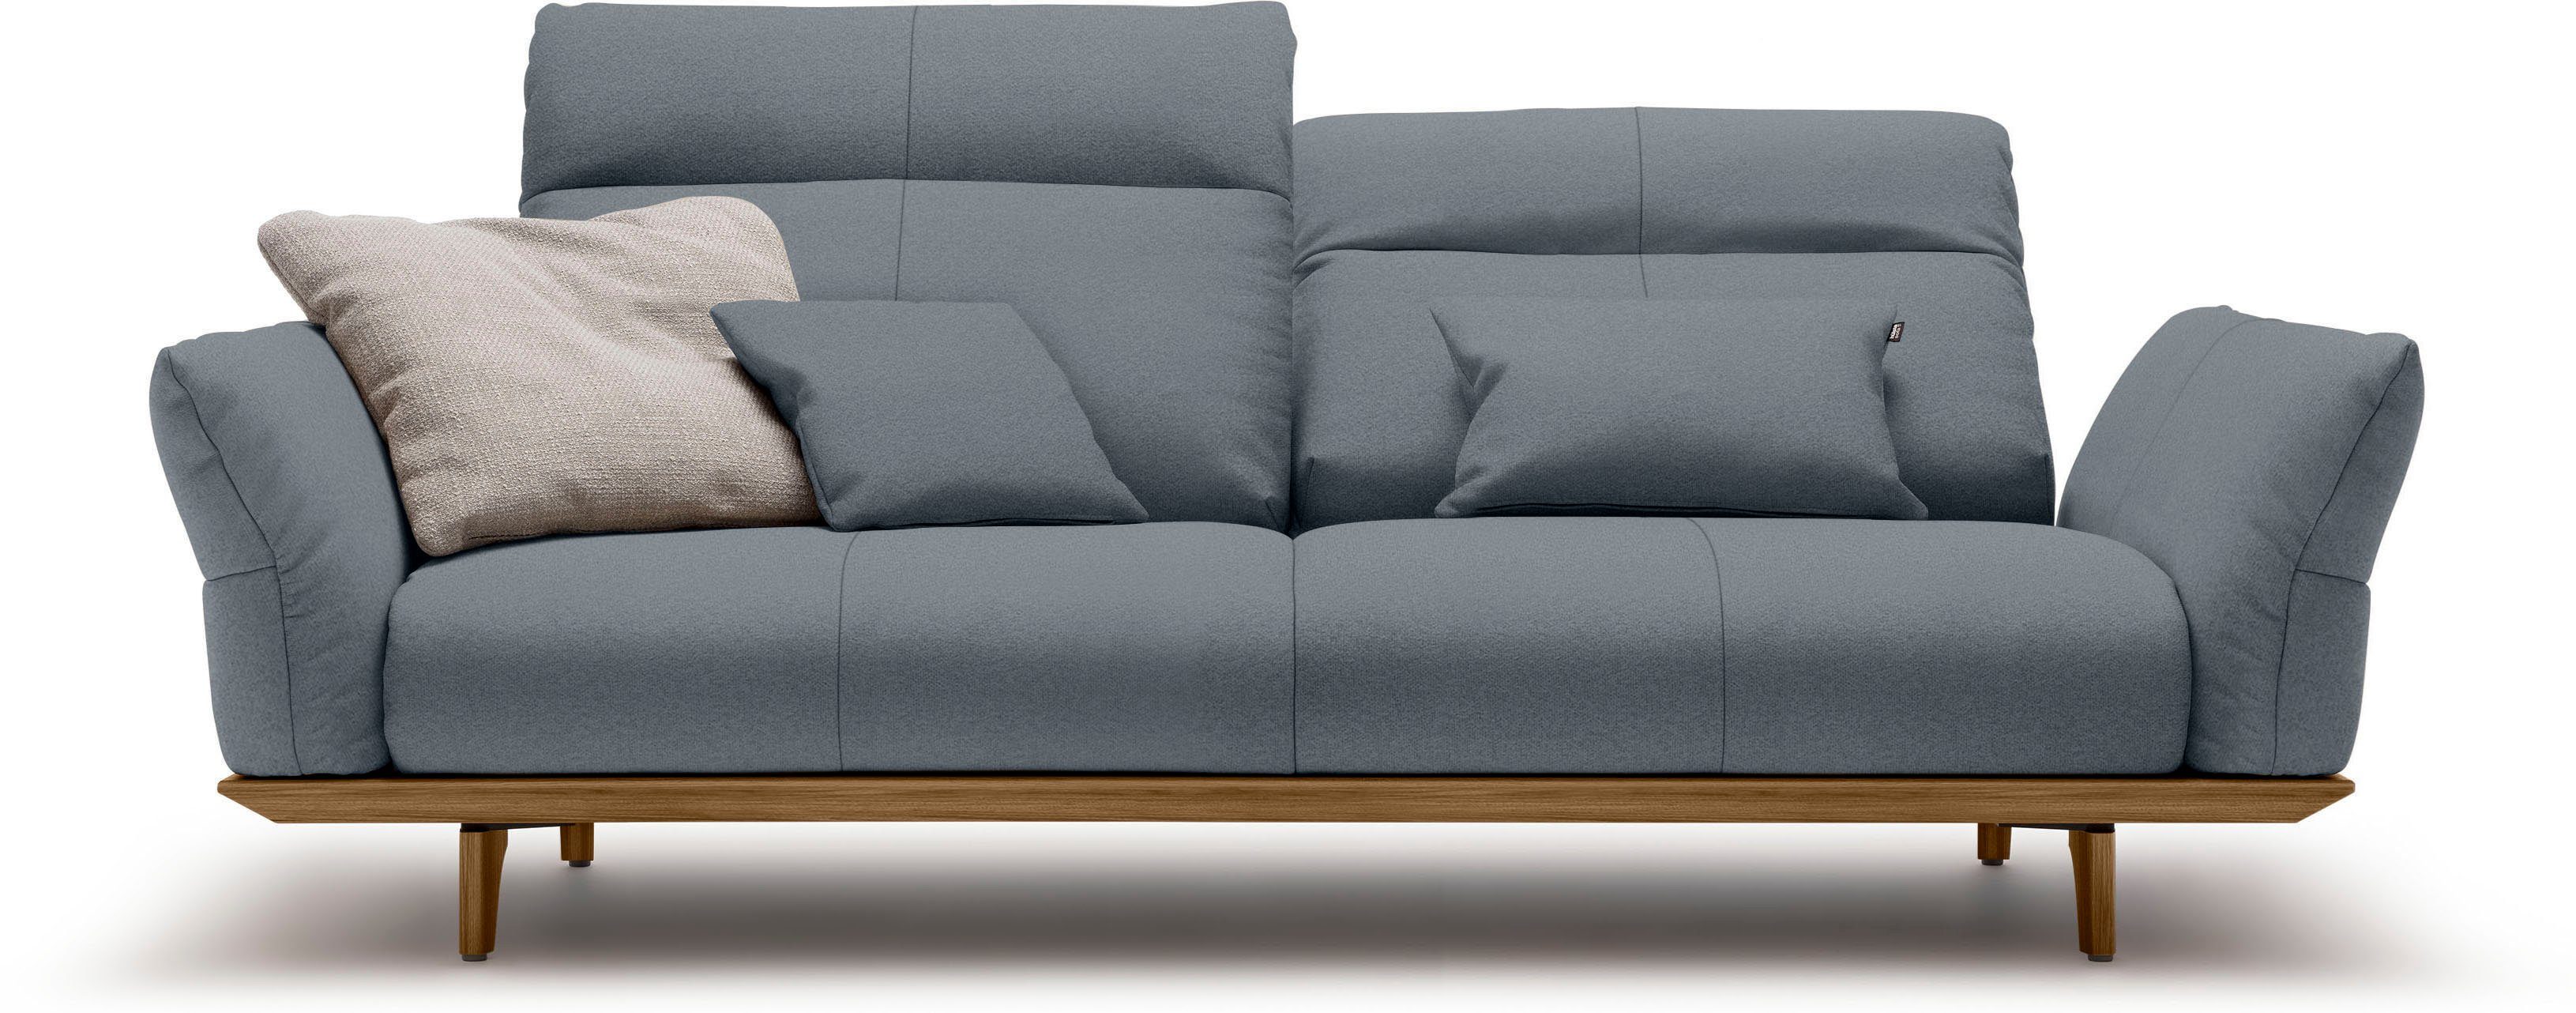 hülsta sofa Sockel Breite hs.460, in 3-Sitzer Nussbaum, Nussbaum, cm Füße 208